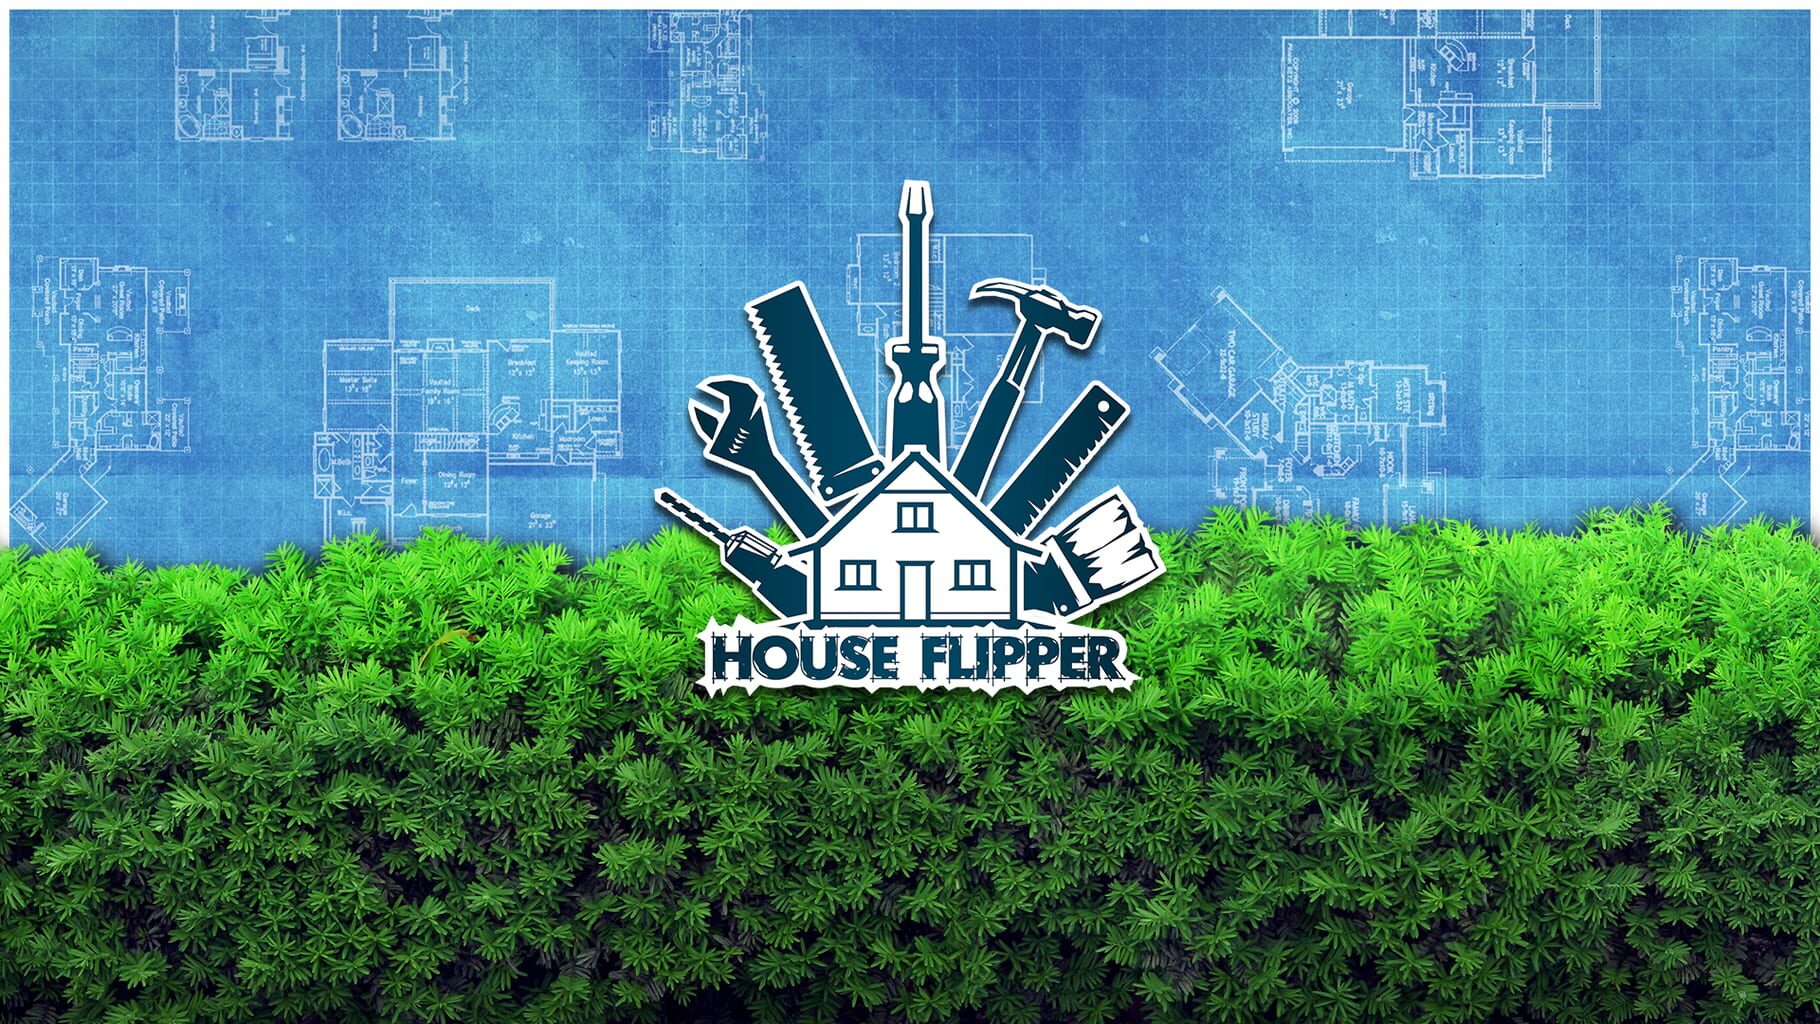 House Flipper artwork